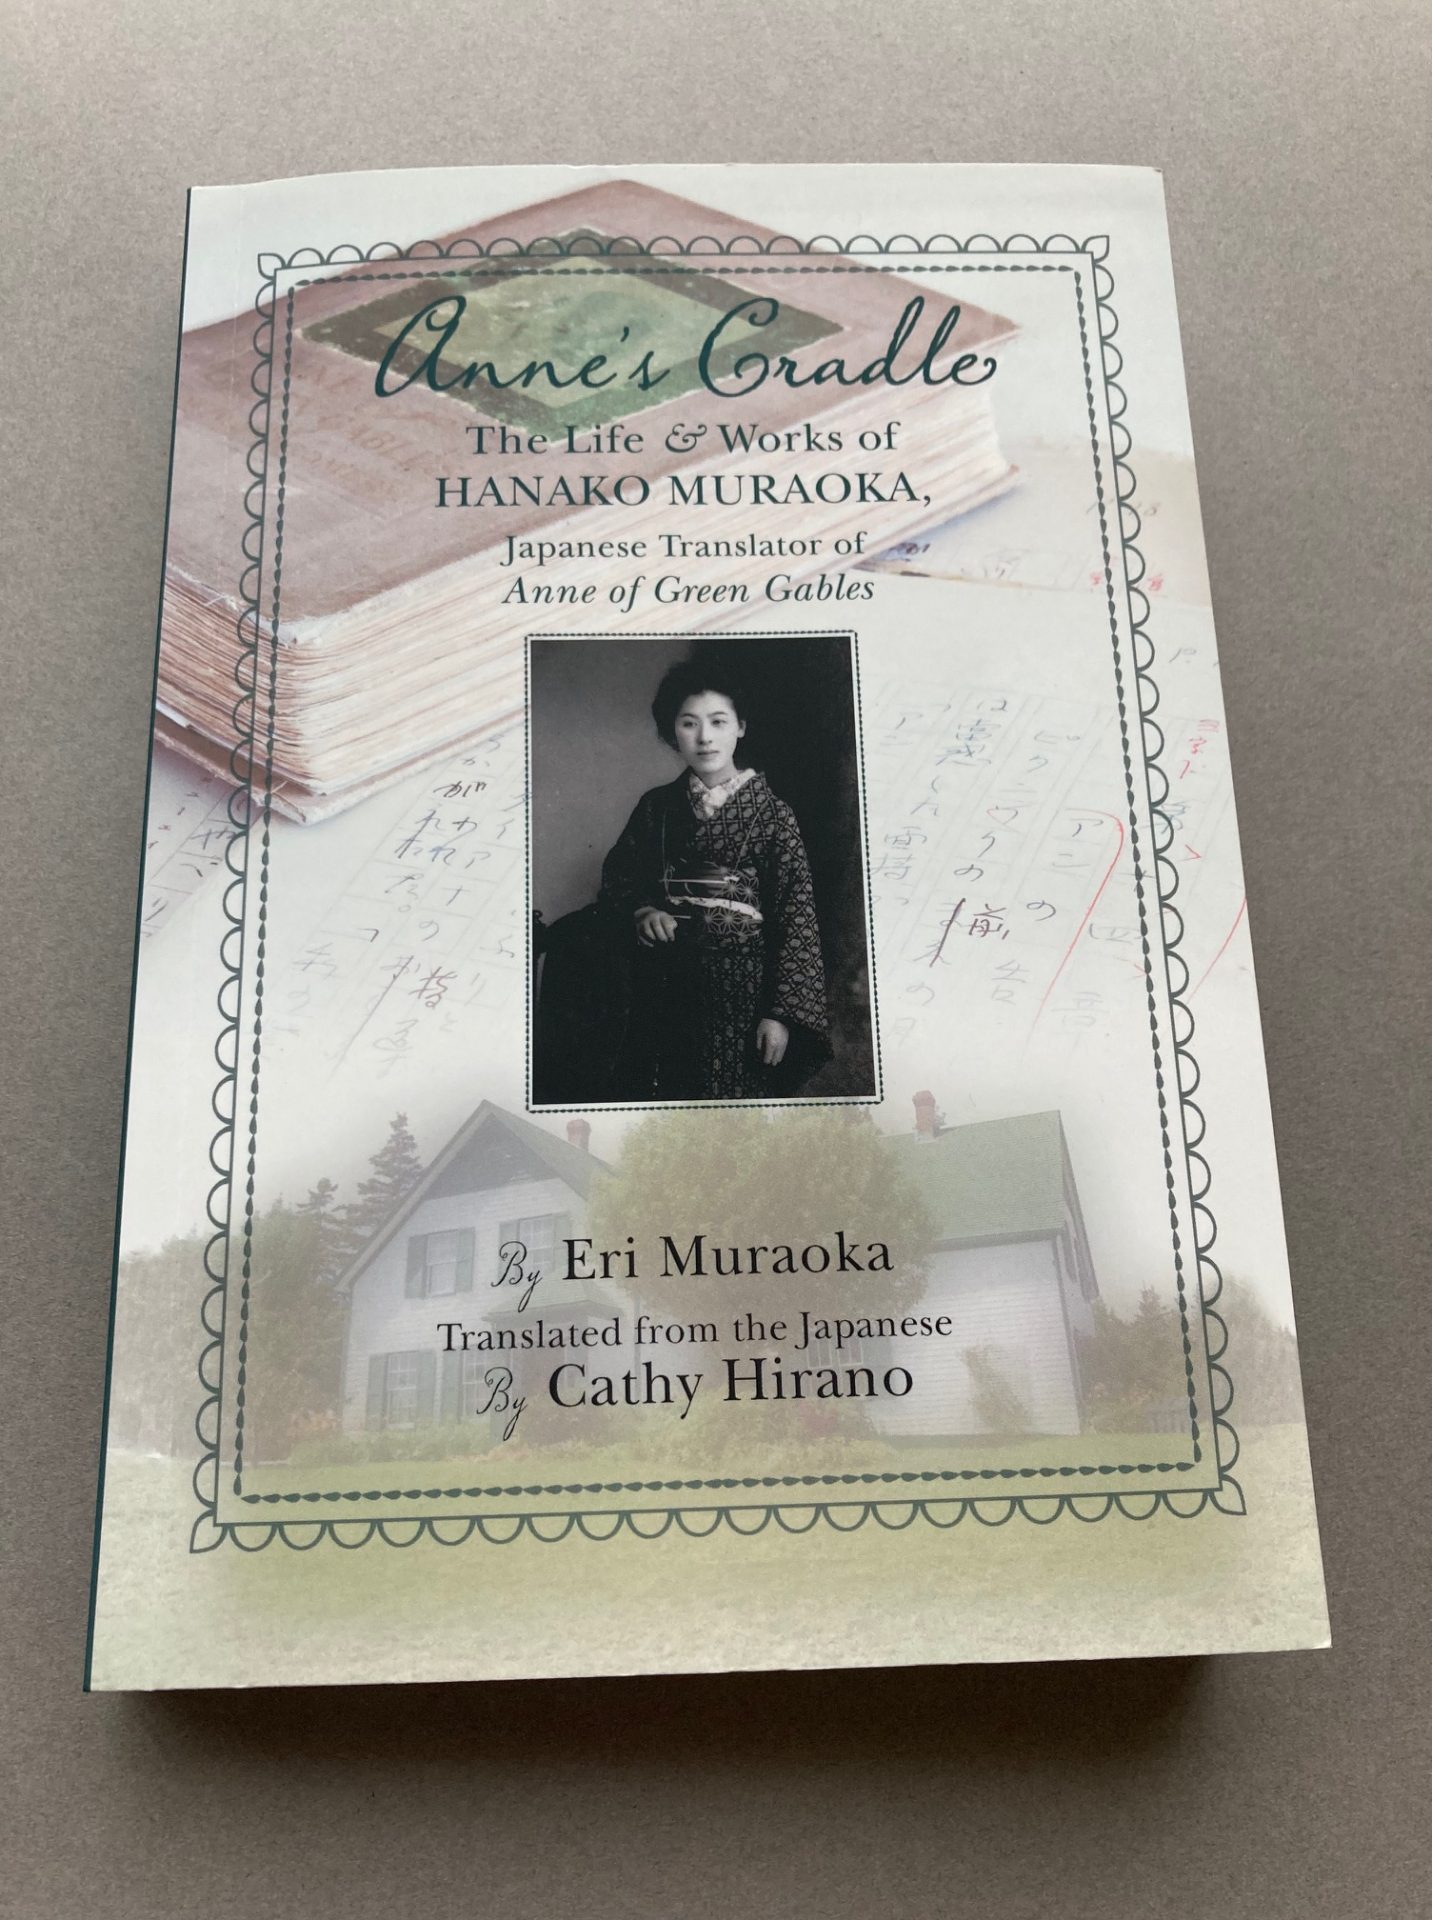 The Life & Work of Hanako Muraoka